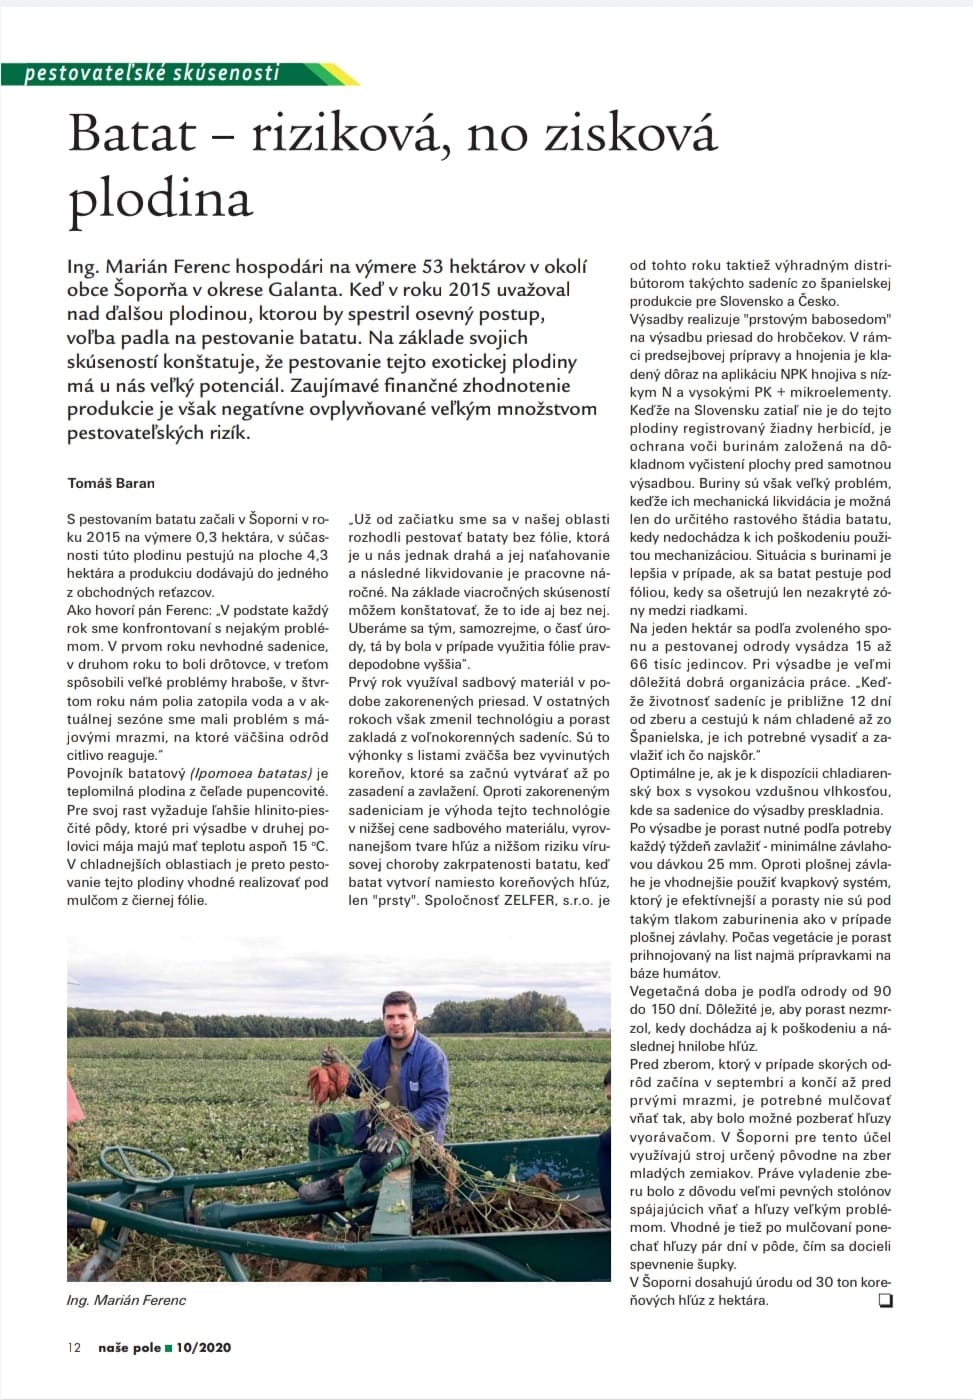 Článok v mesačníku Naše pole - pestovanie batátov - Zelfer